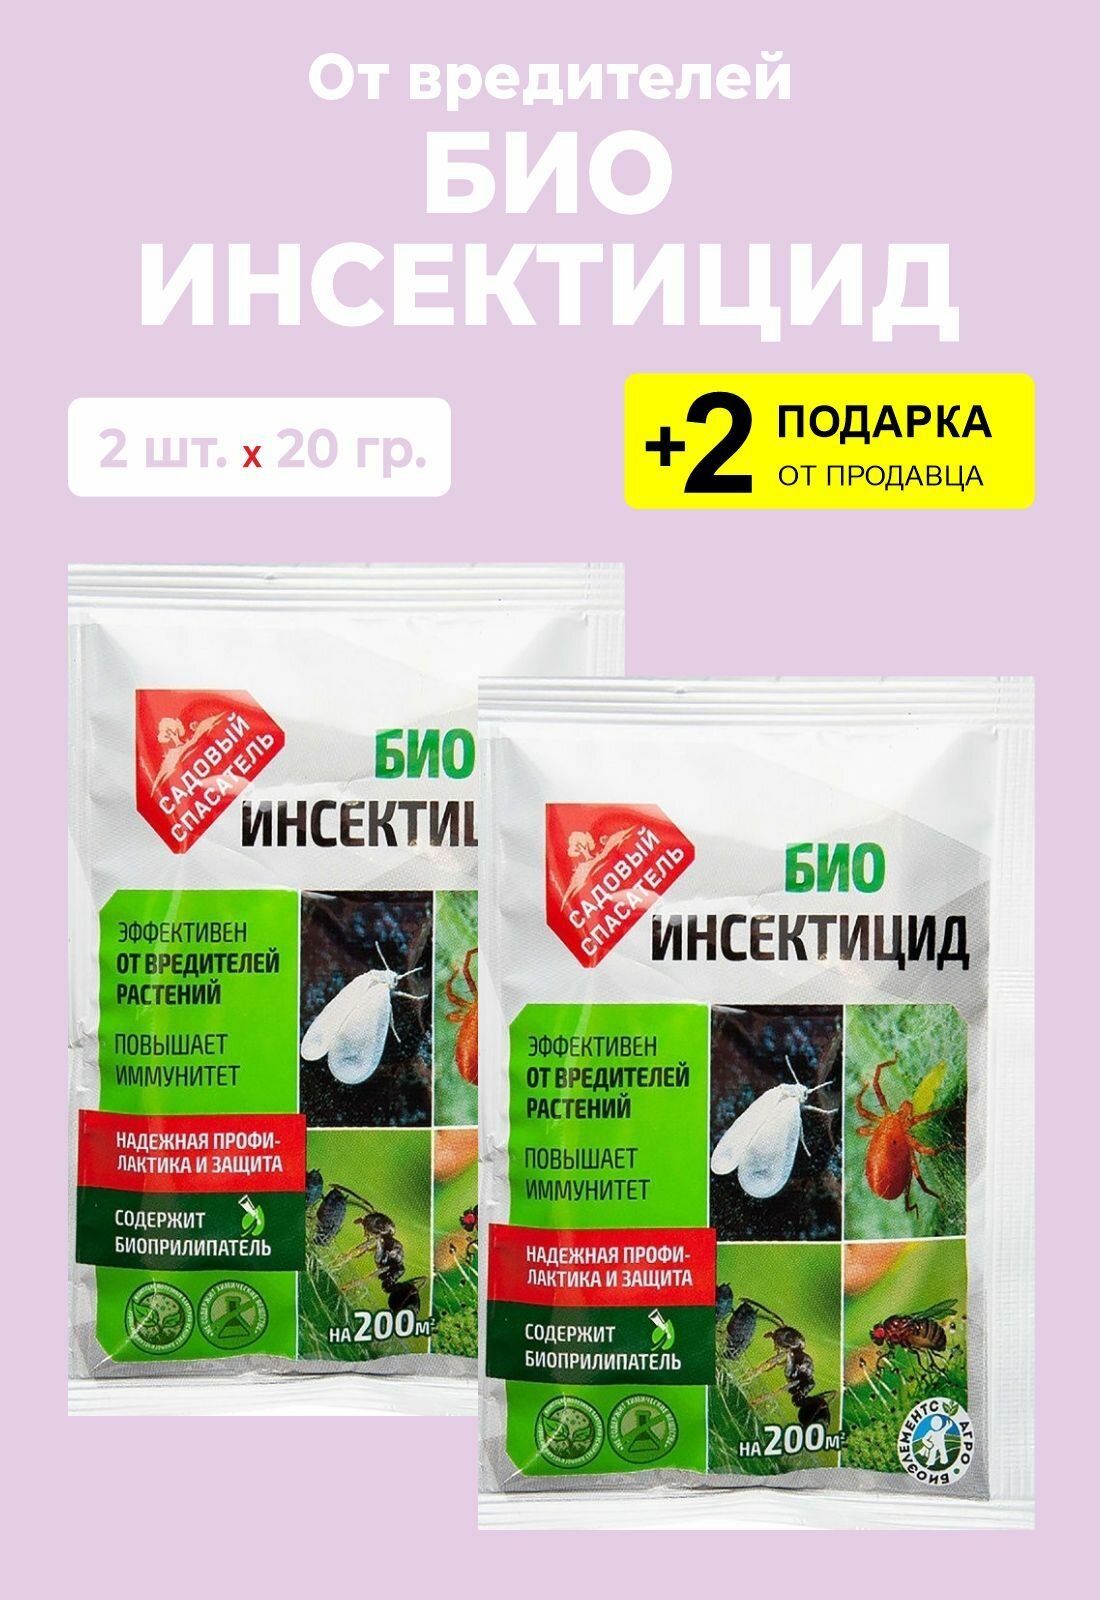 Биоинсектицид от вредителей растений, 20 гр., 2 упаковки + 2 Подарка